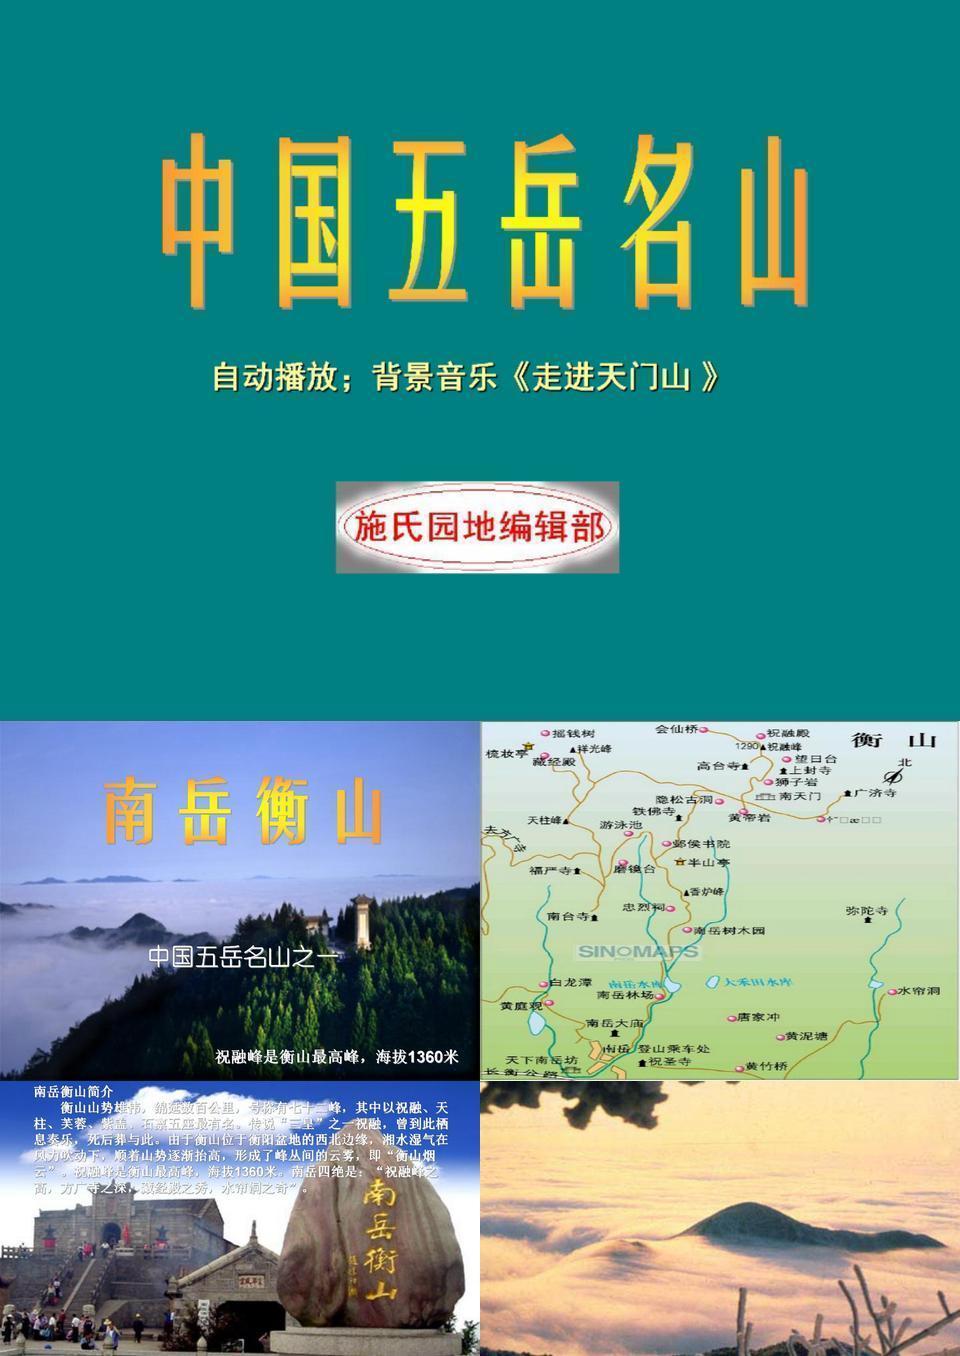 中国五岳介绍中国五岳五岳至尊泰山中华五岳名山五岳为中国五大名山的